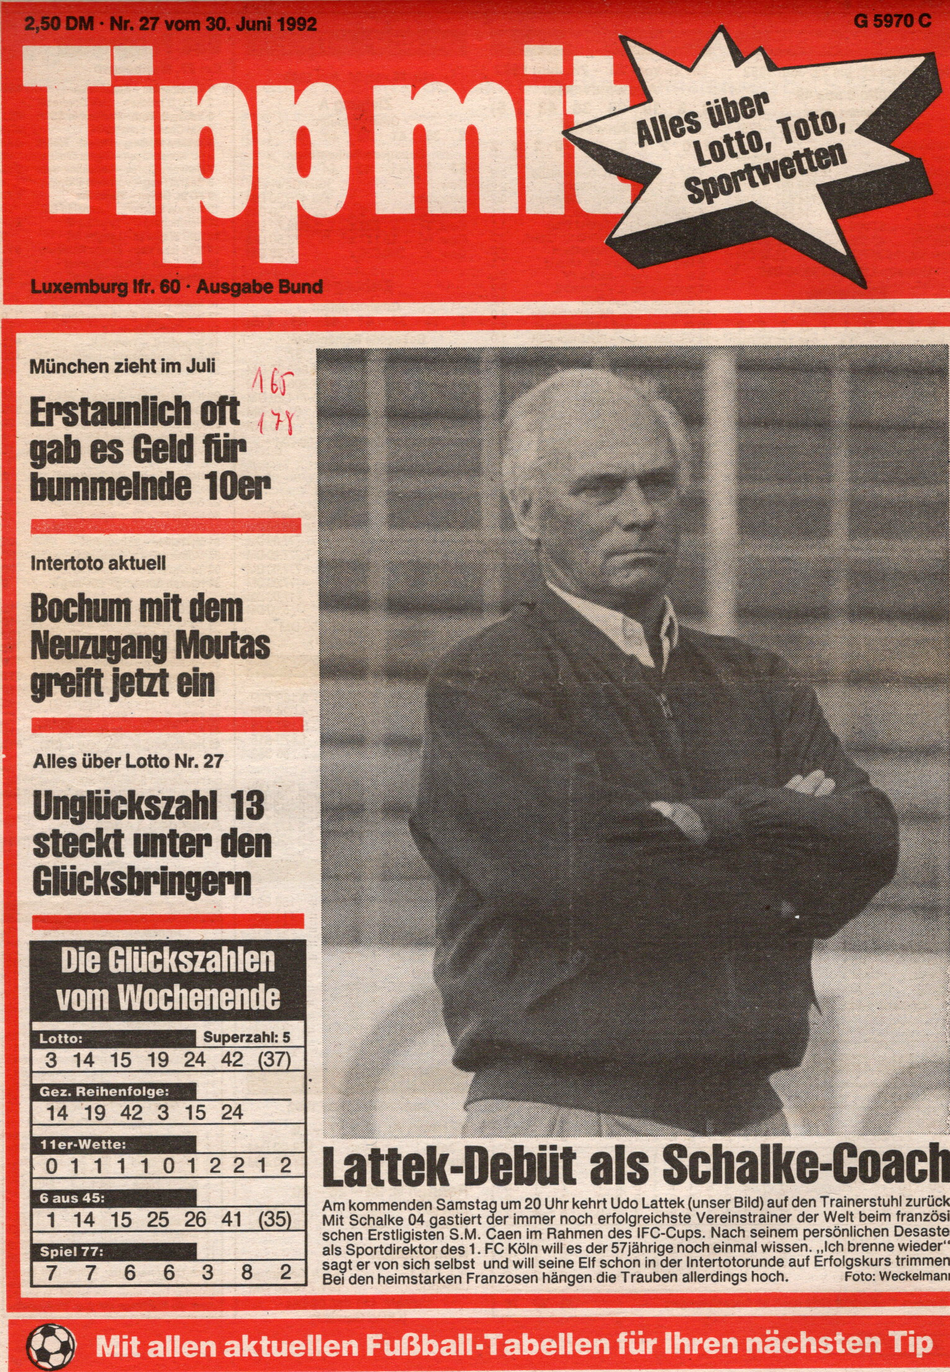 Titelbild der "Tipp mit" Ausgabe 27/1992 mit dem Trainerdebüt von Udo Lattek als Schalke-Coach